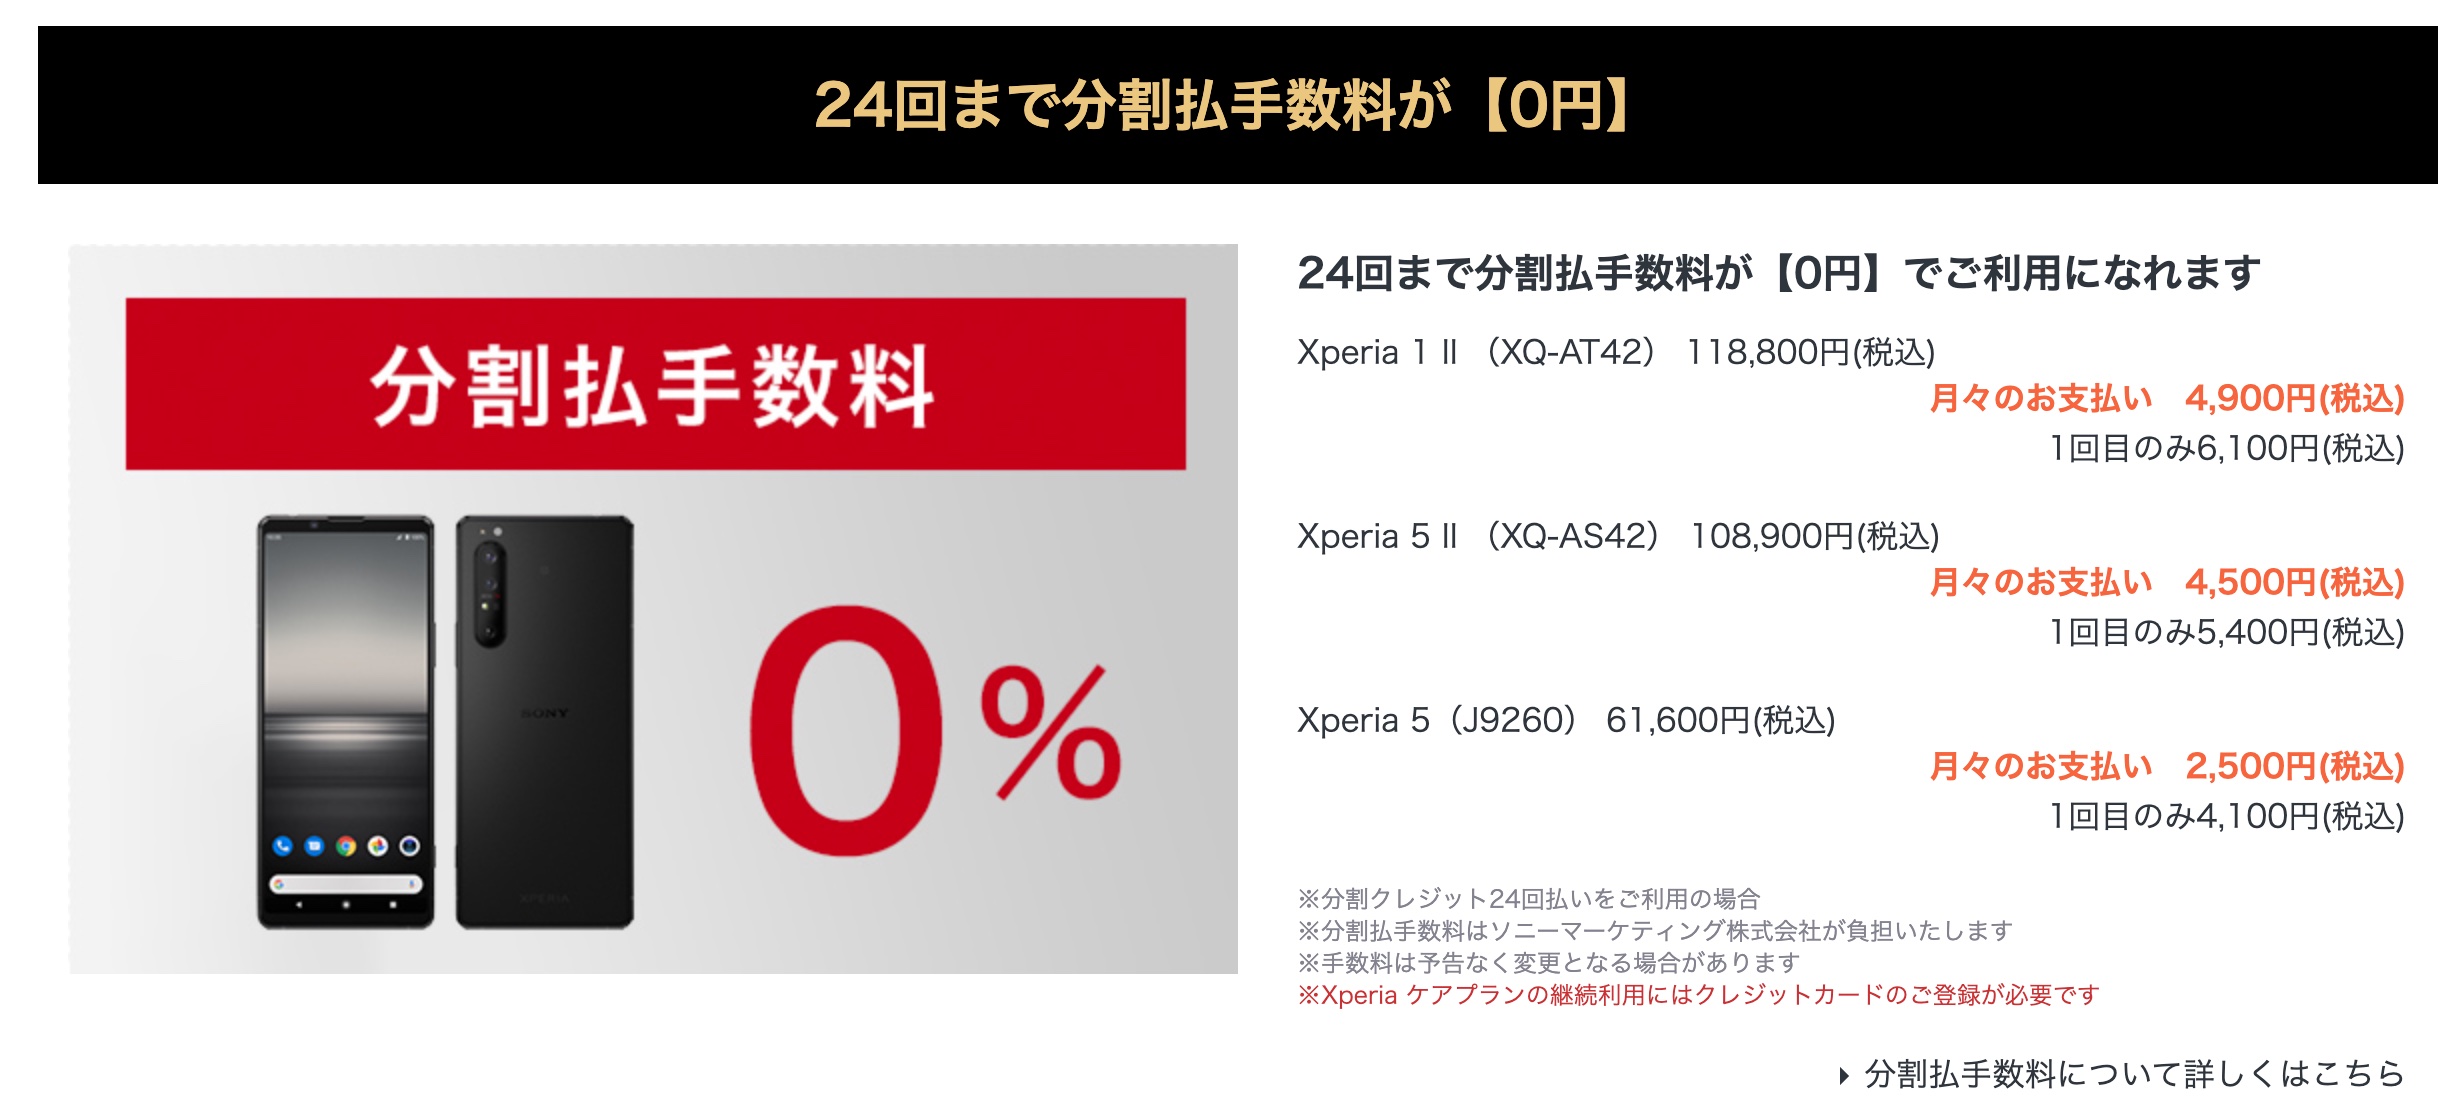 ソニー、SIMフリースマホ「Xperia 5 II XQ-AS42」と「Xperia 5 J9260」を最大5500円値下げで10万8900円